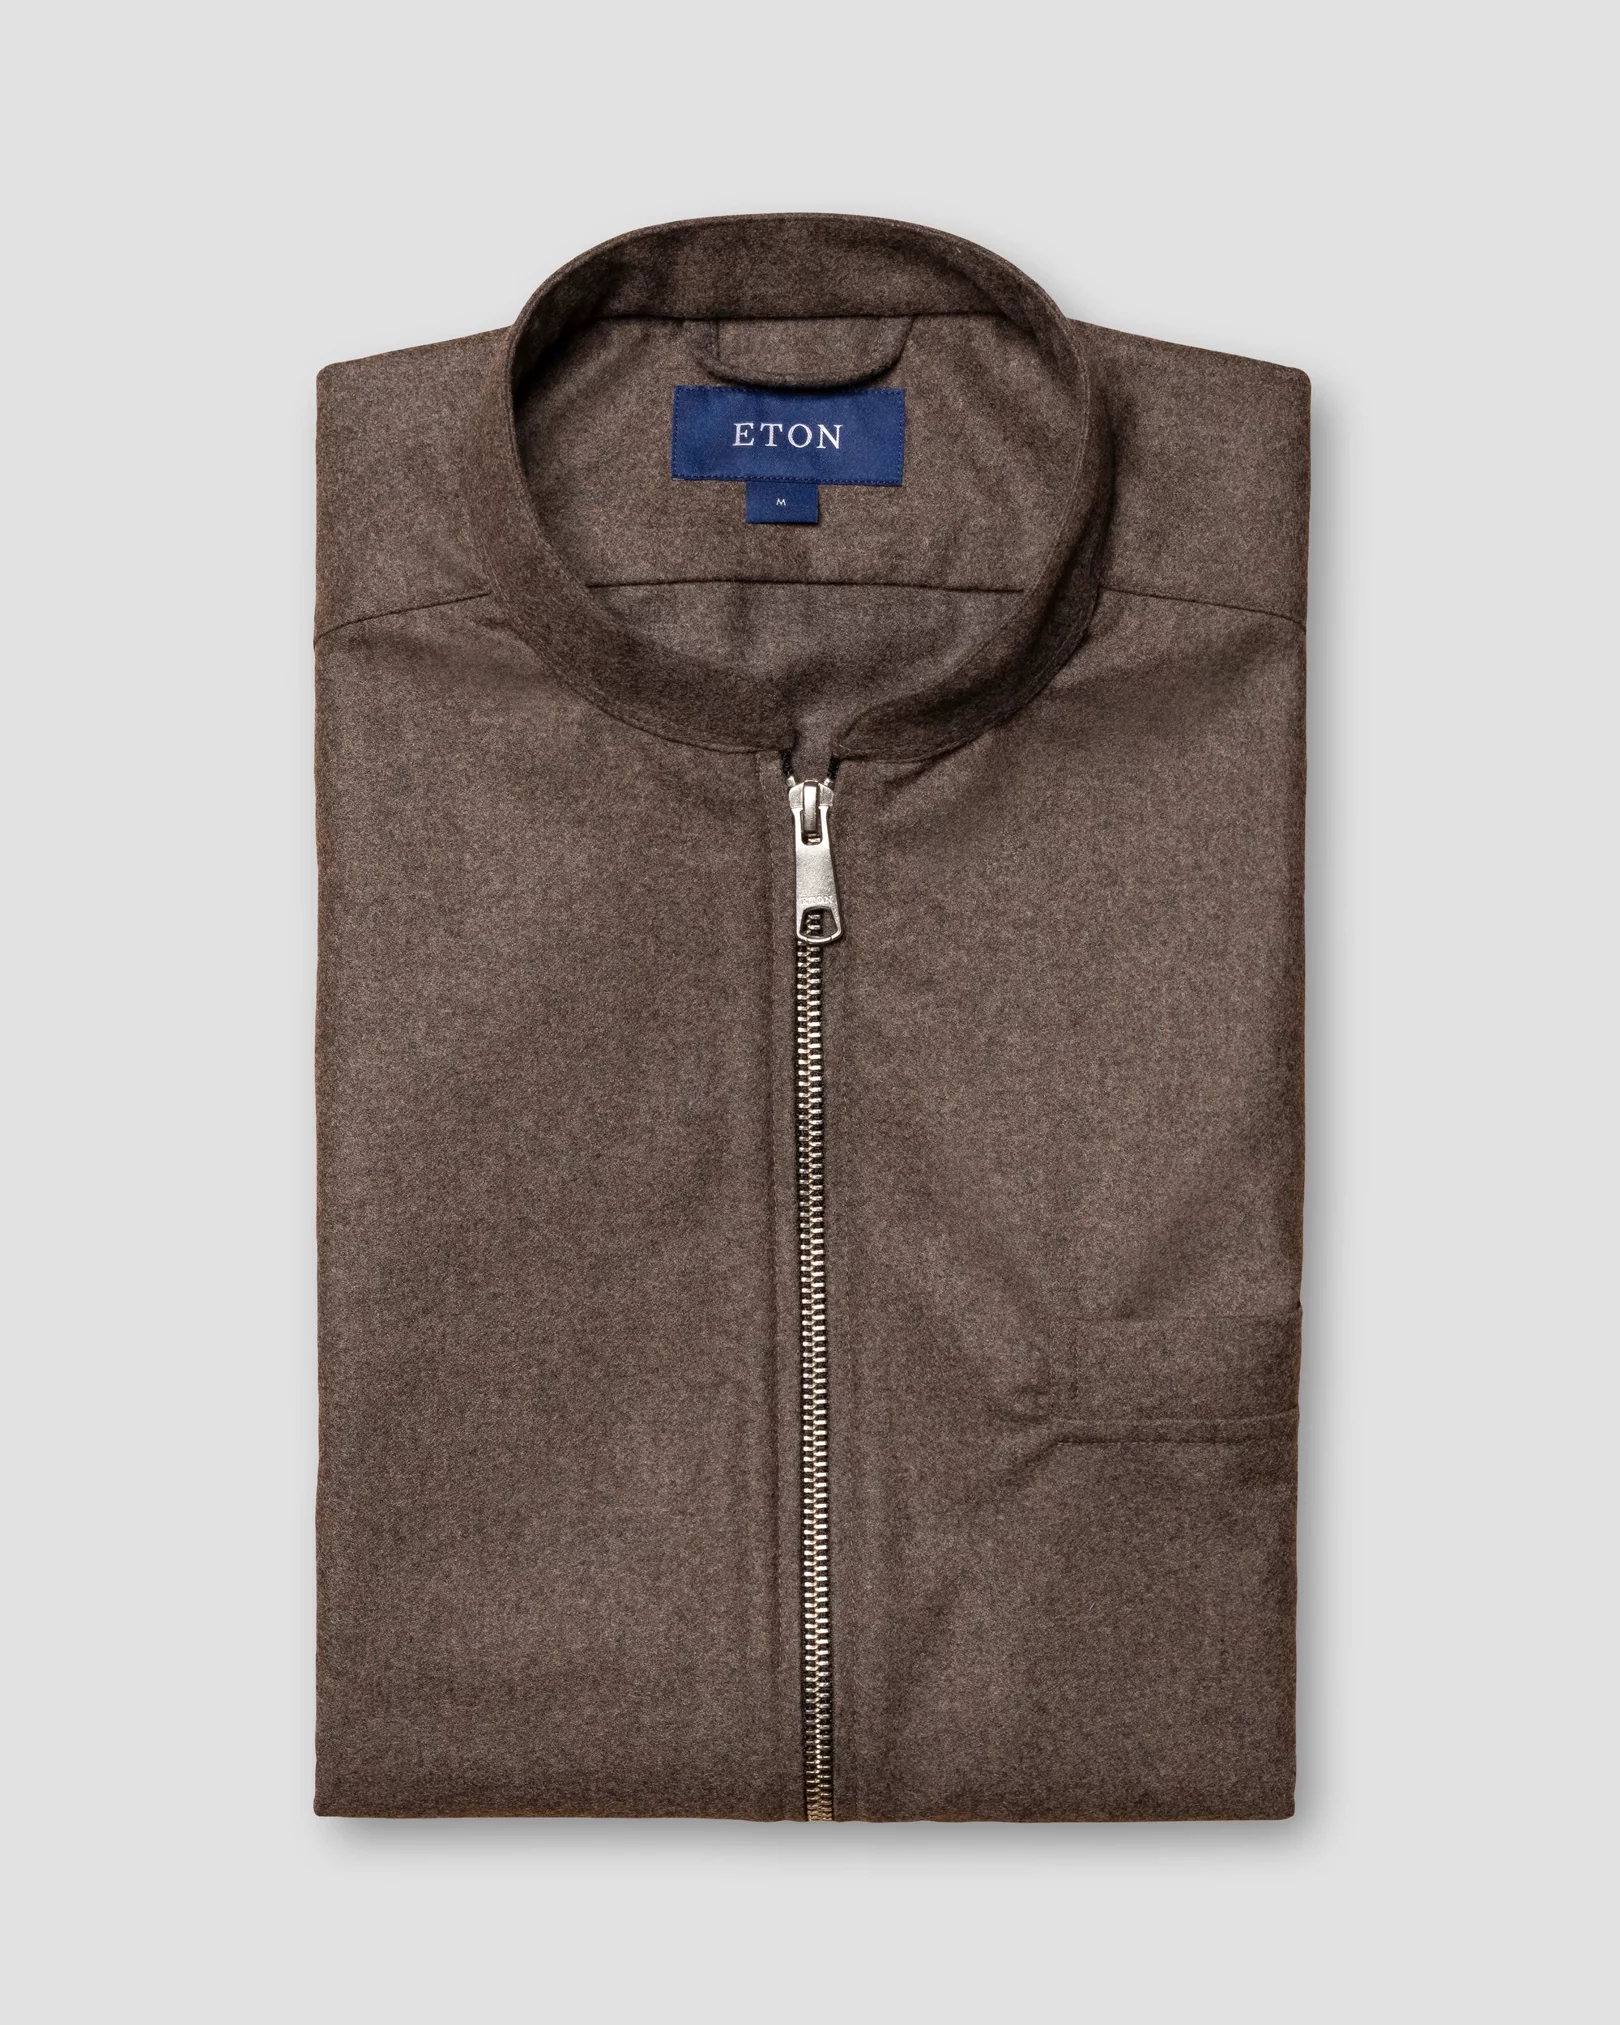 Eton - brown twill cashmere vest